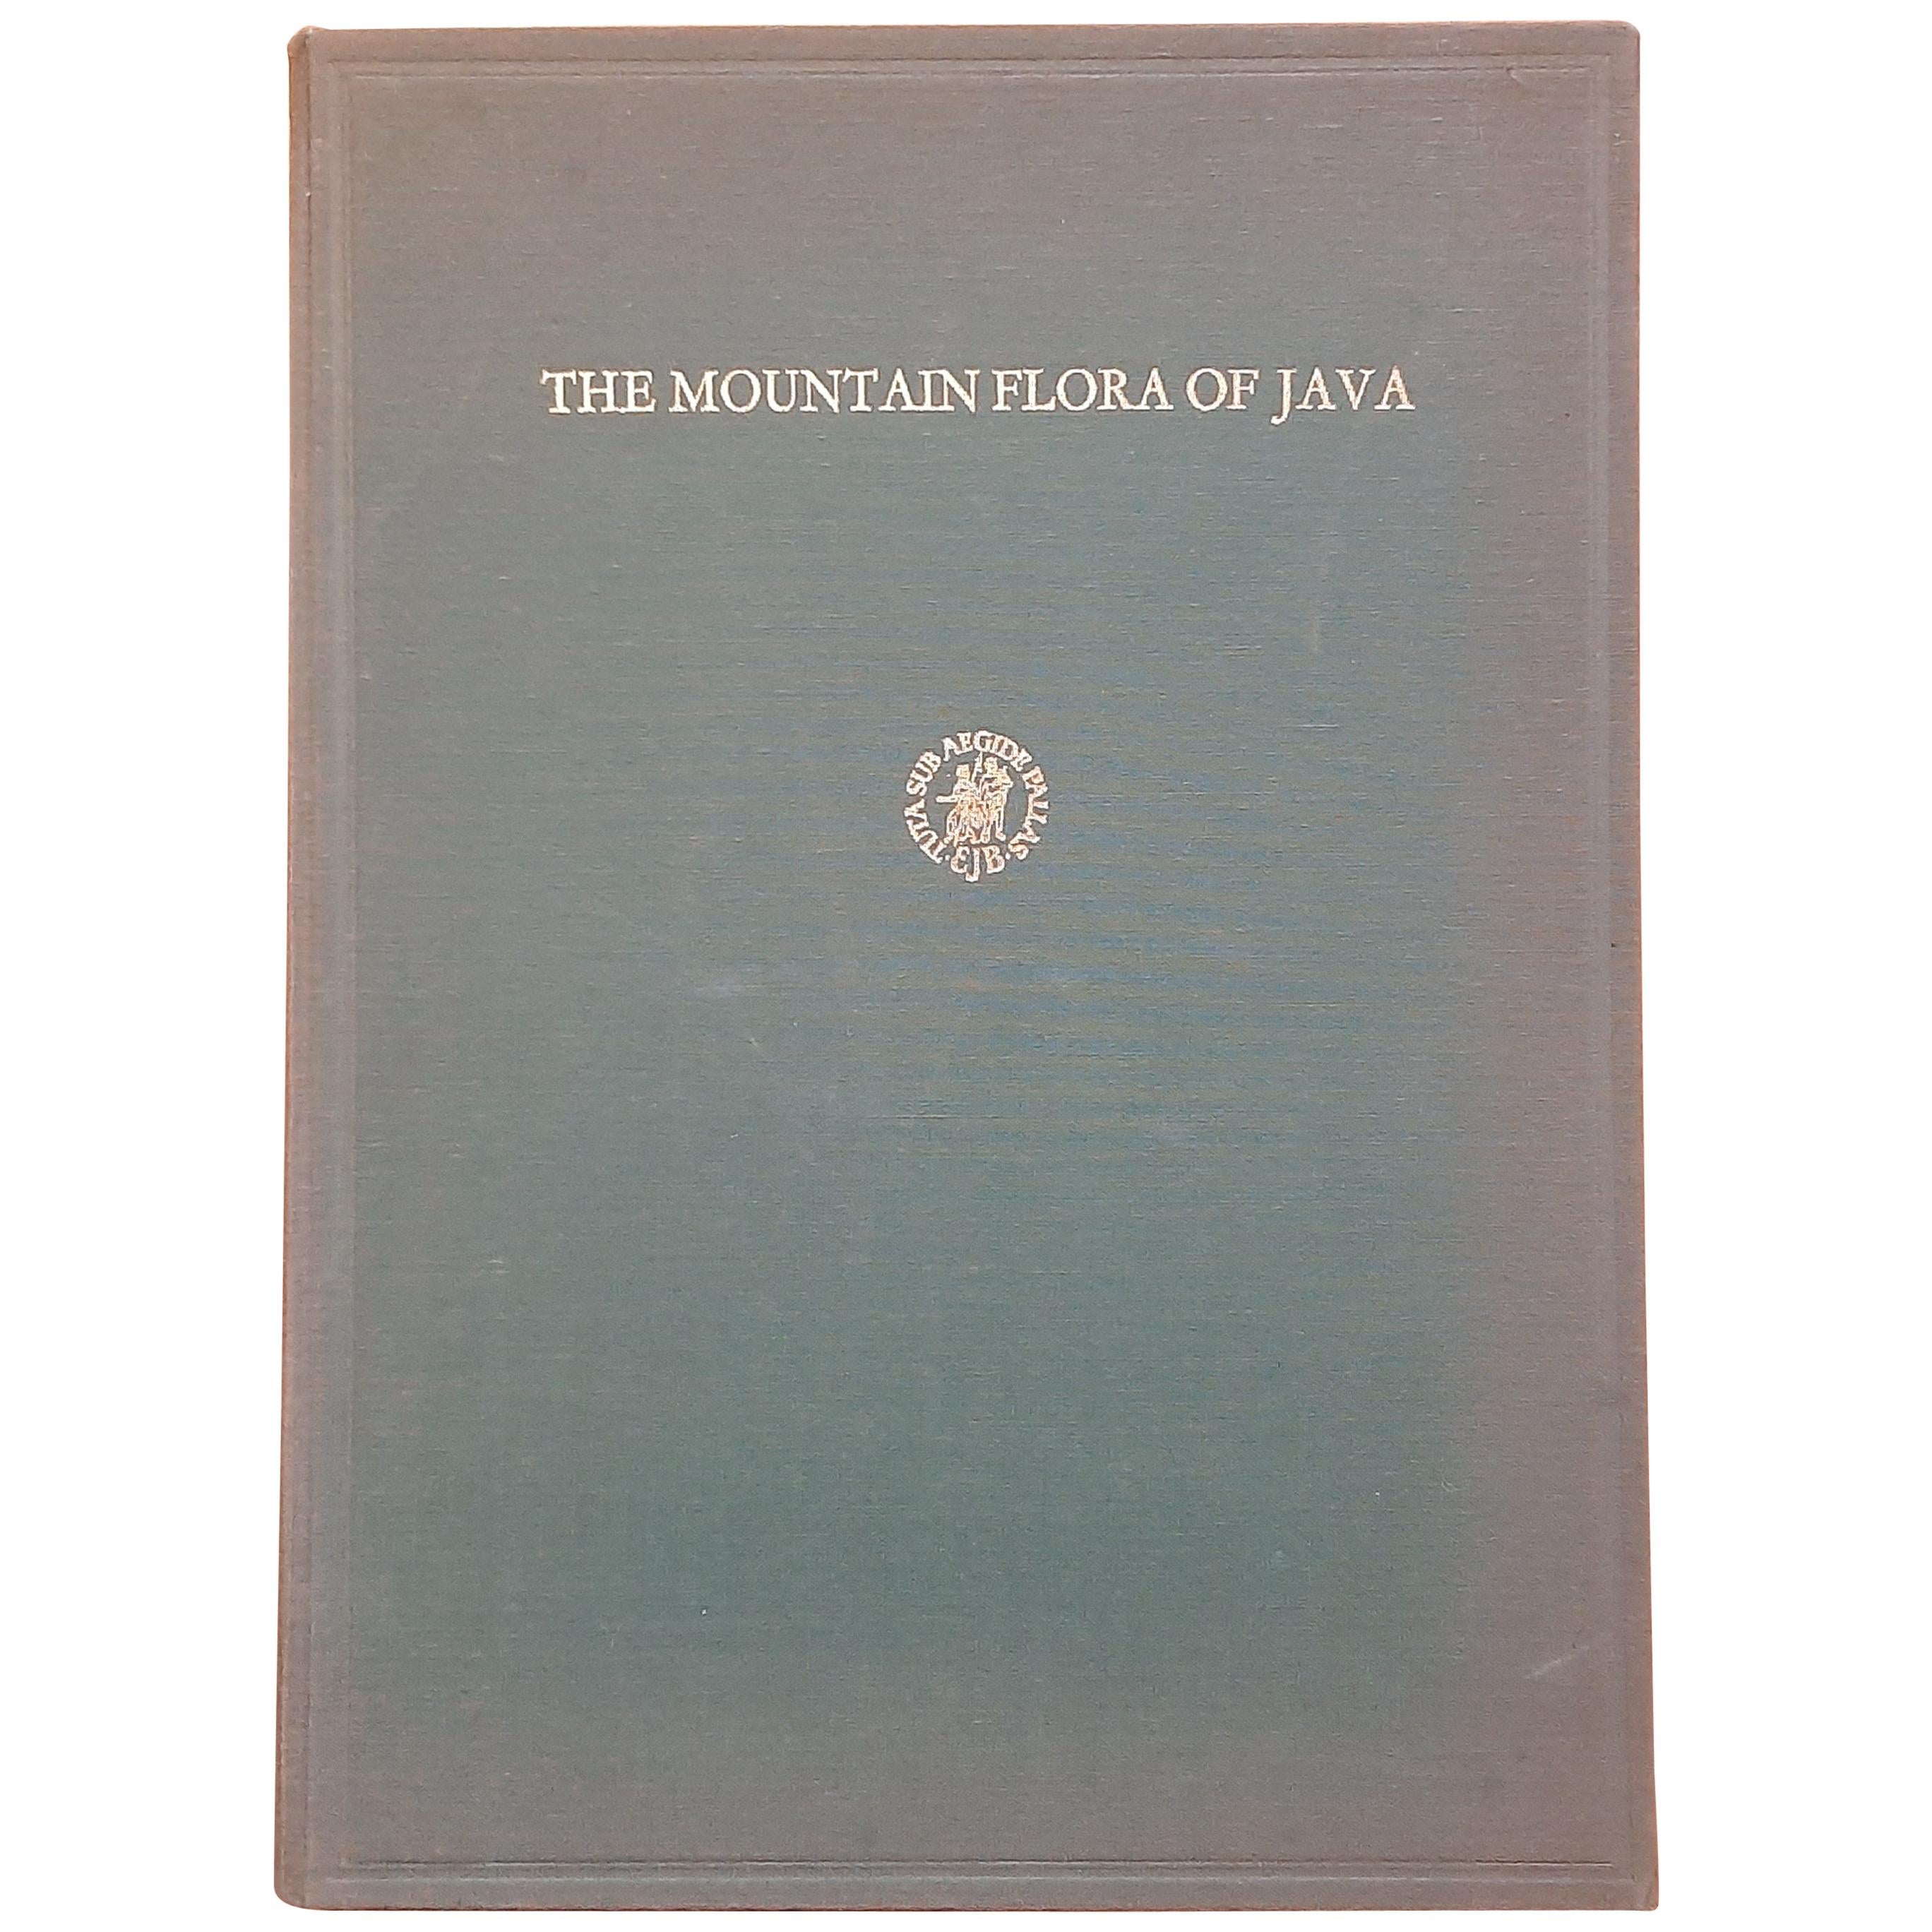 The Mountain Flora of Java by Van Steenis '1972'